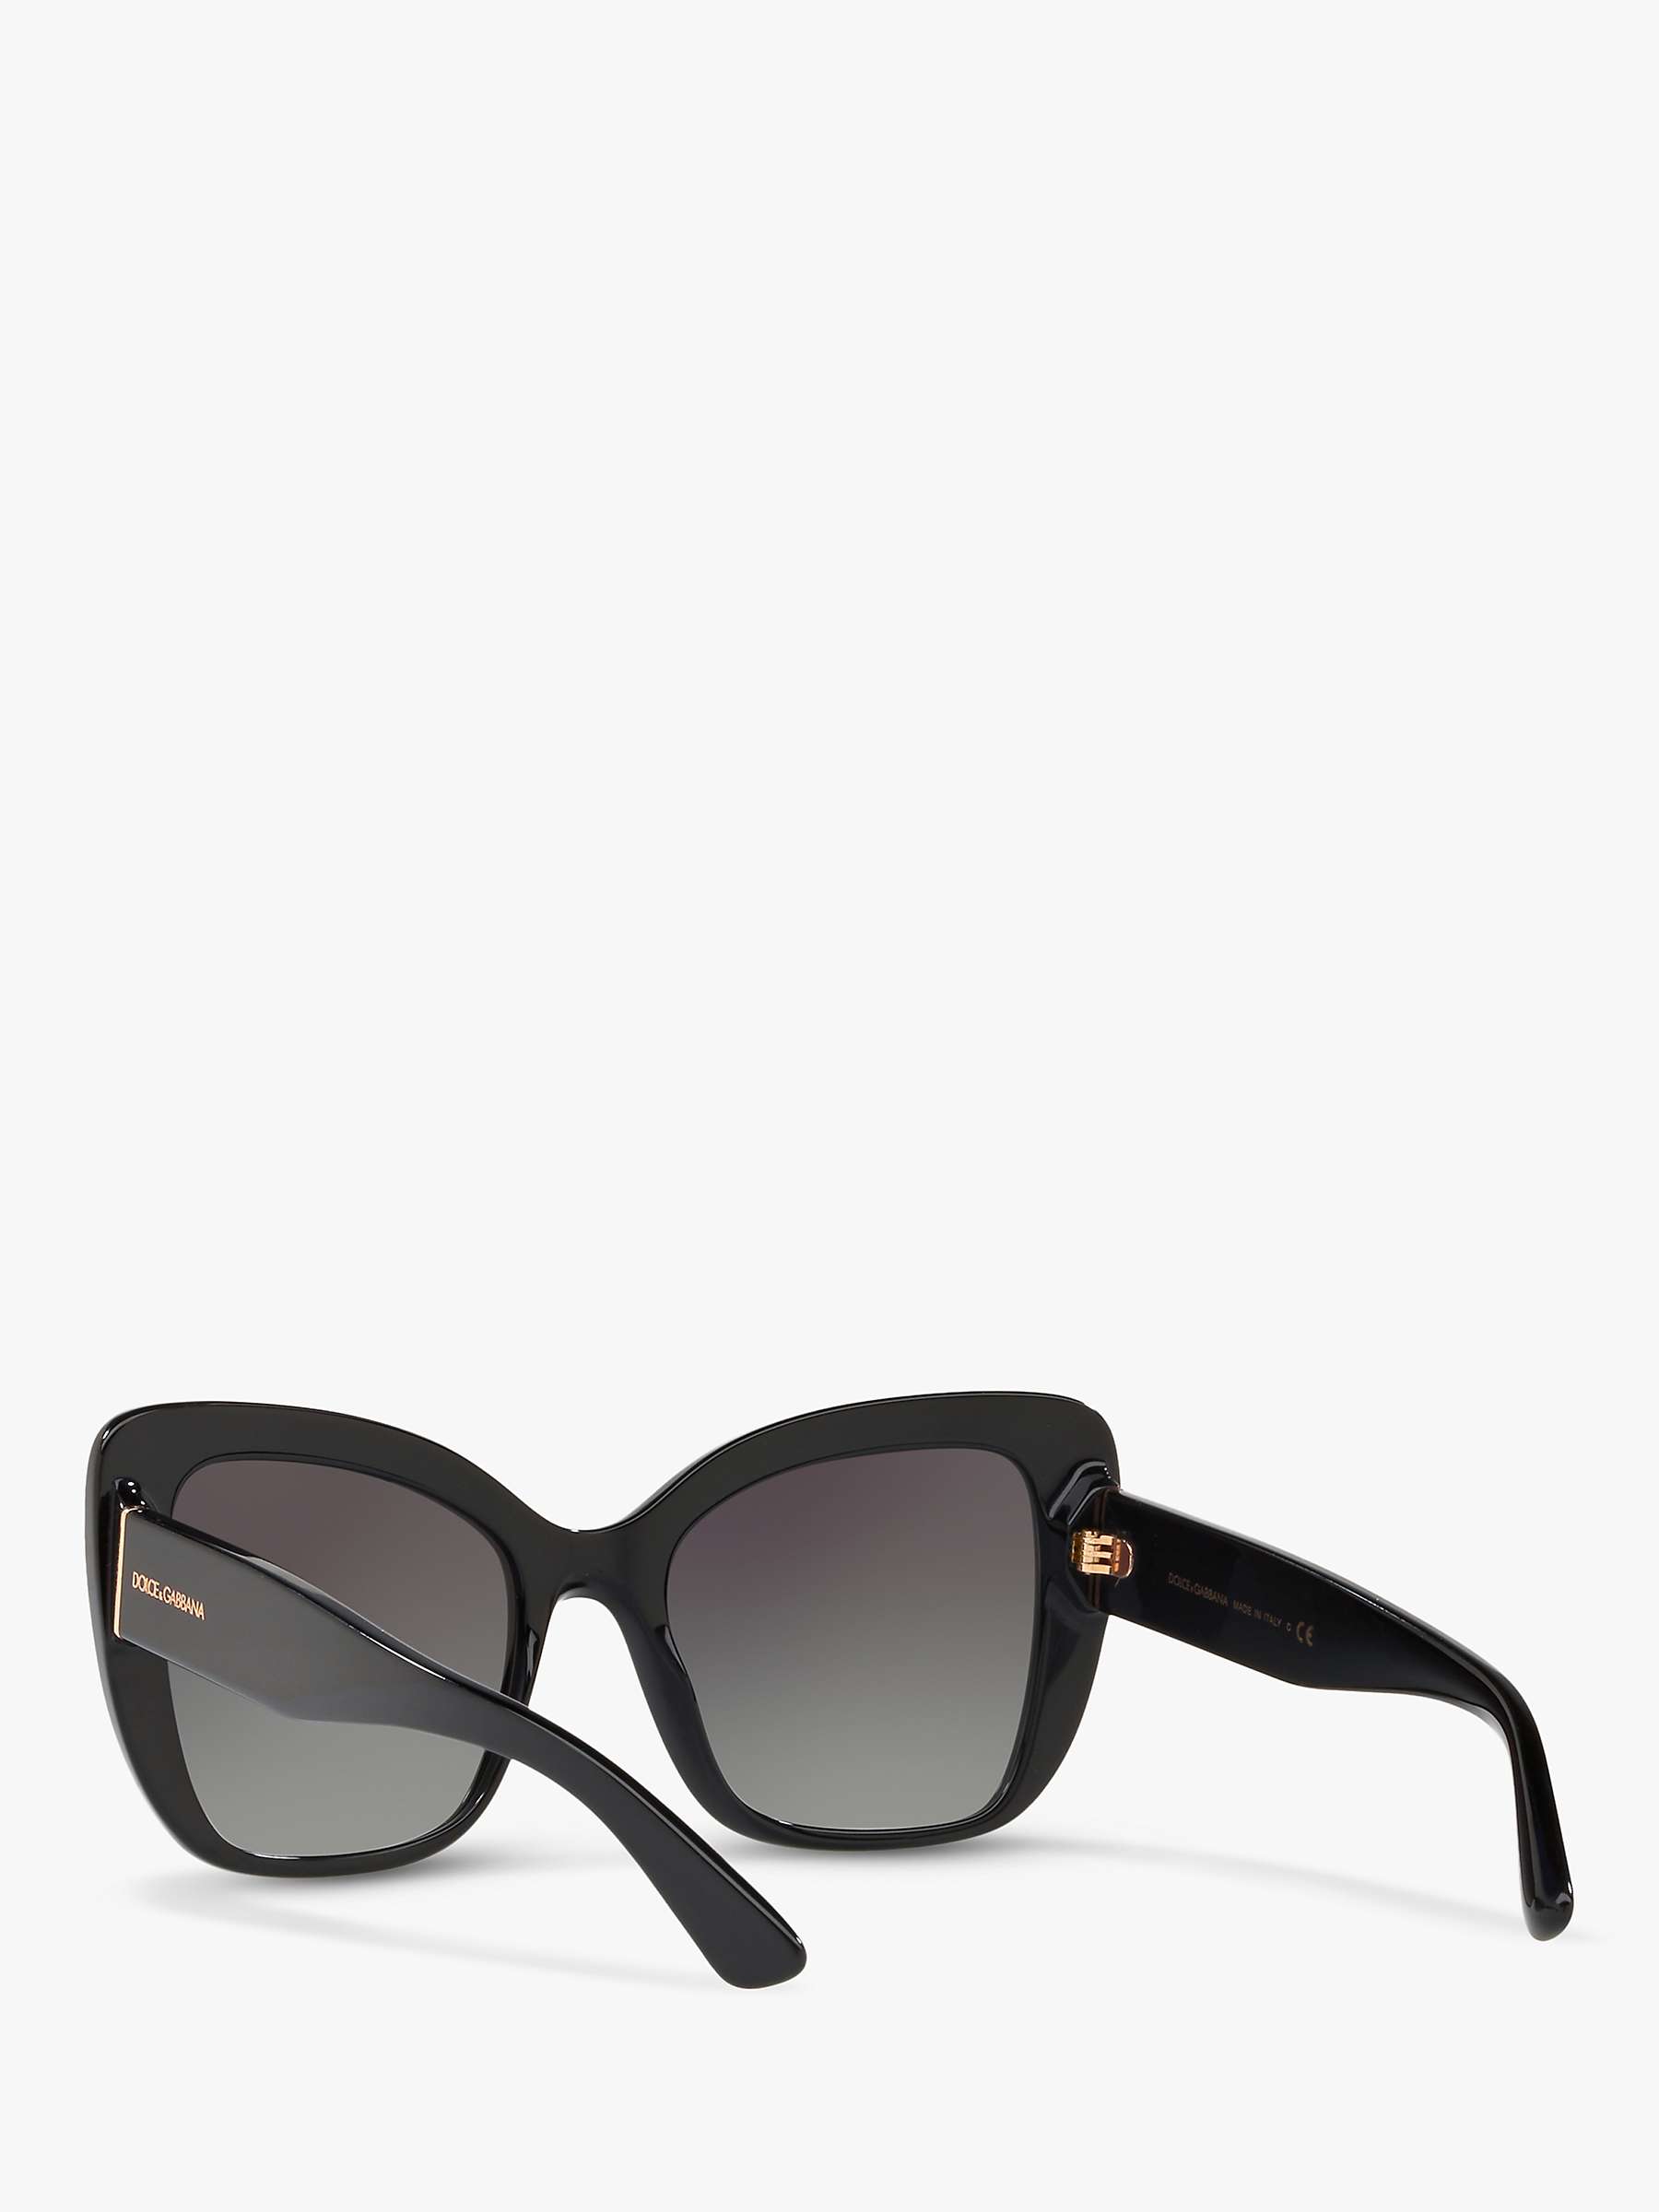 Buy Dolce & Gabbana DG4348 Women's Cat's Eye Sunglasses Online at johnlewis.com